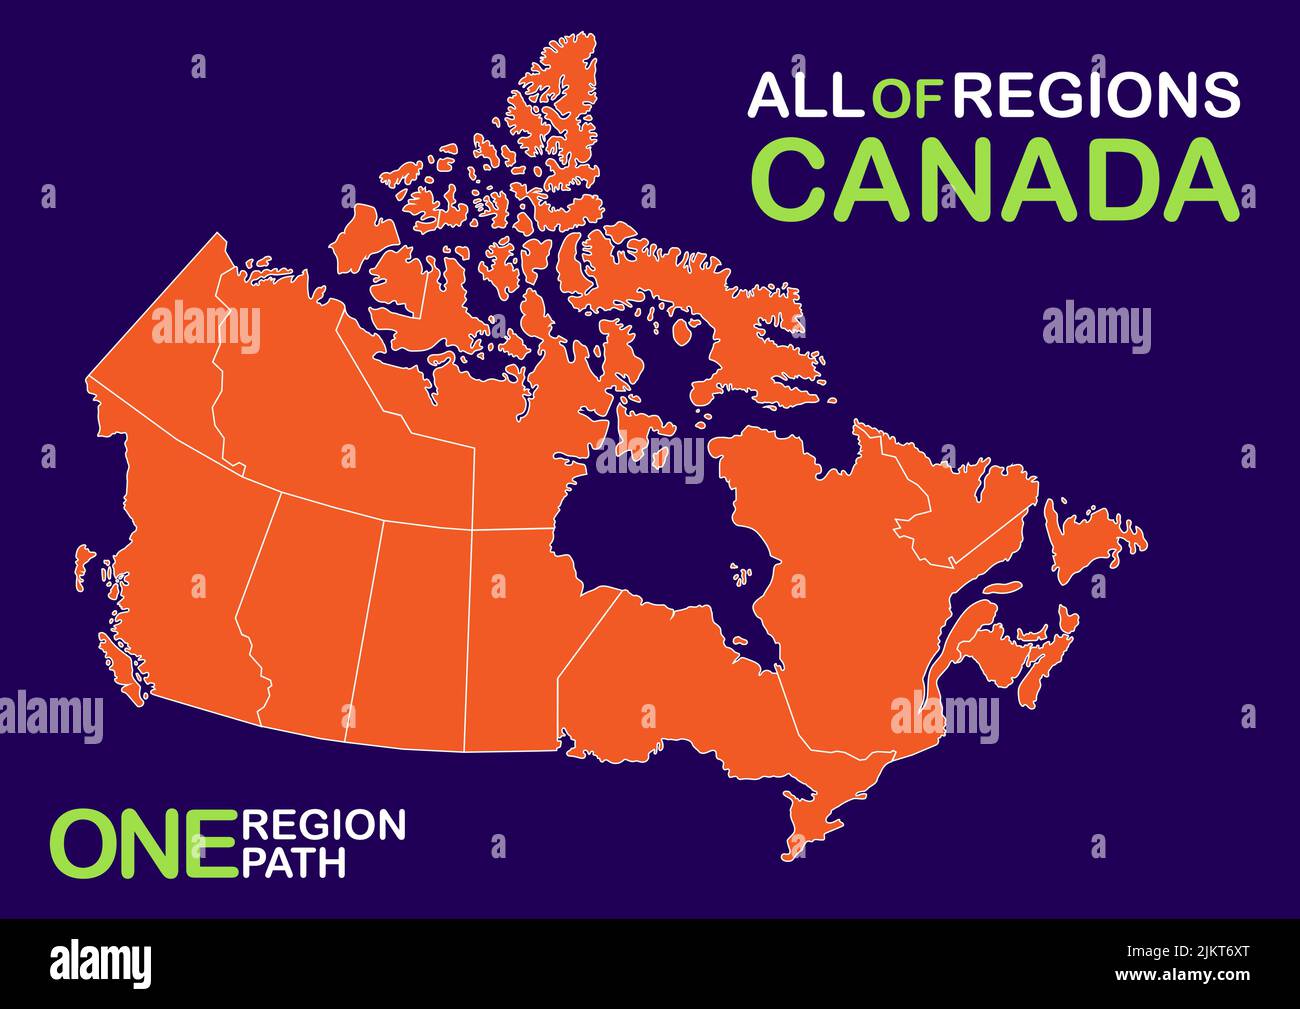 Vettore, illustrazione isolata della mappa amministrativa semplificata del Canada. Frontiere delle province (regioni) Illustrazione Vettoriale